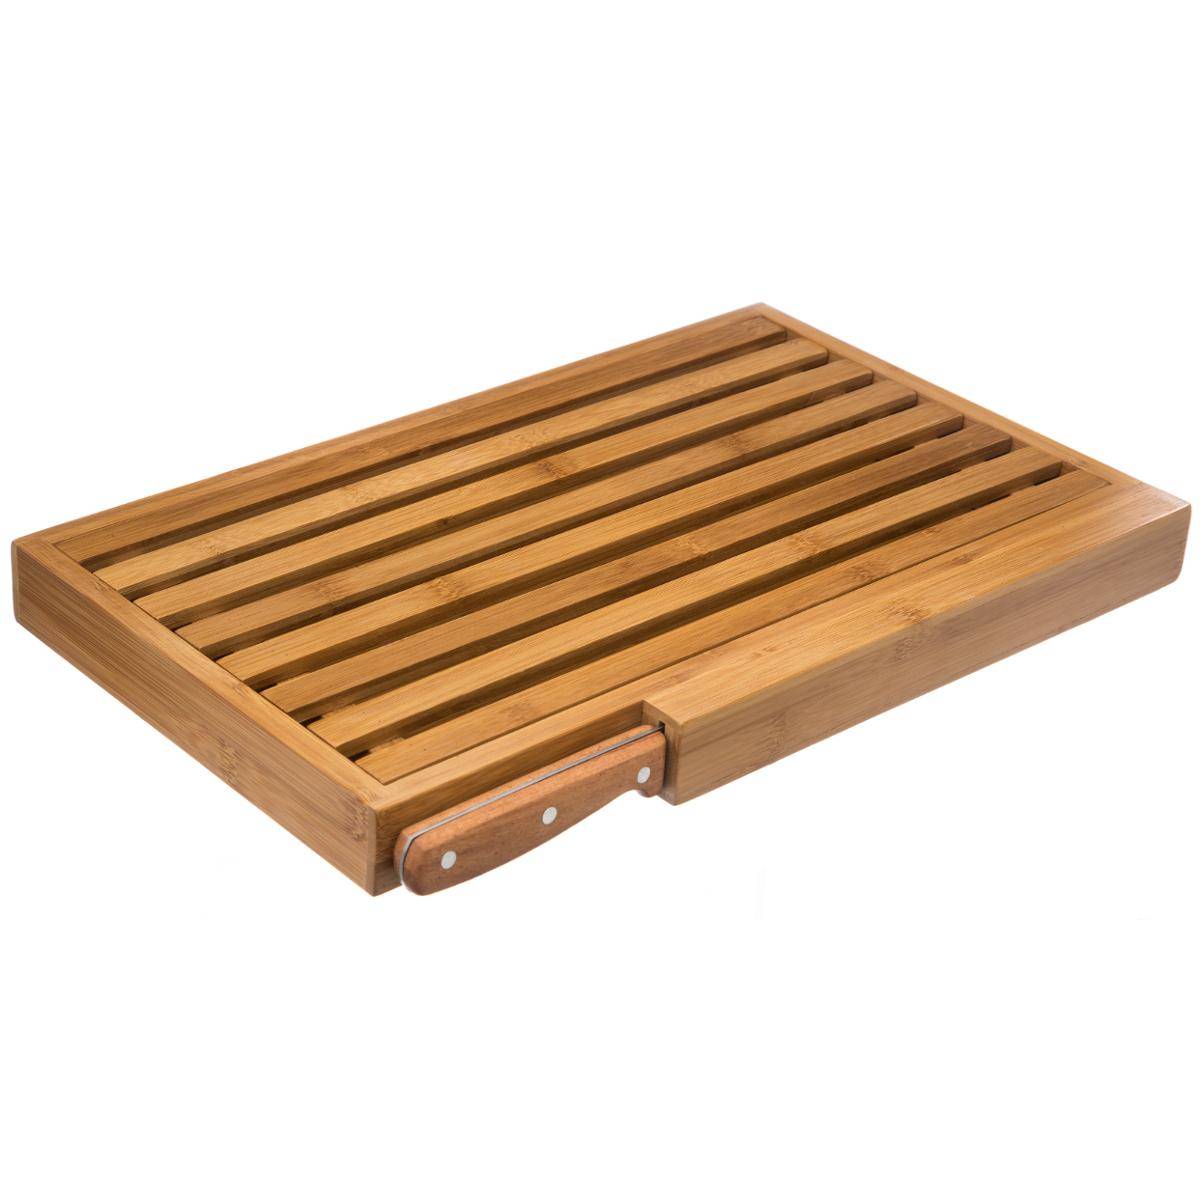 5five - tabla para cortar pan con accesorios de bambú 40x27cm